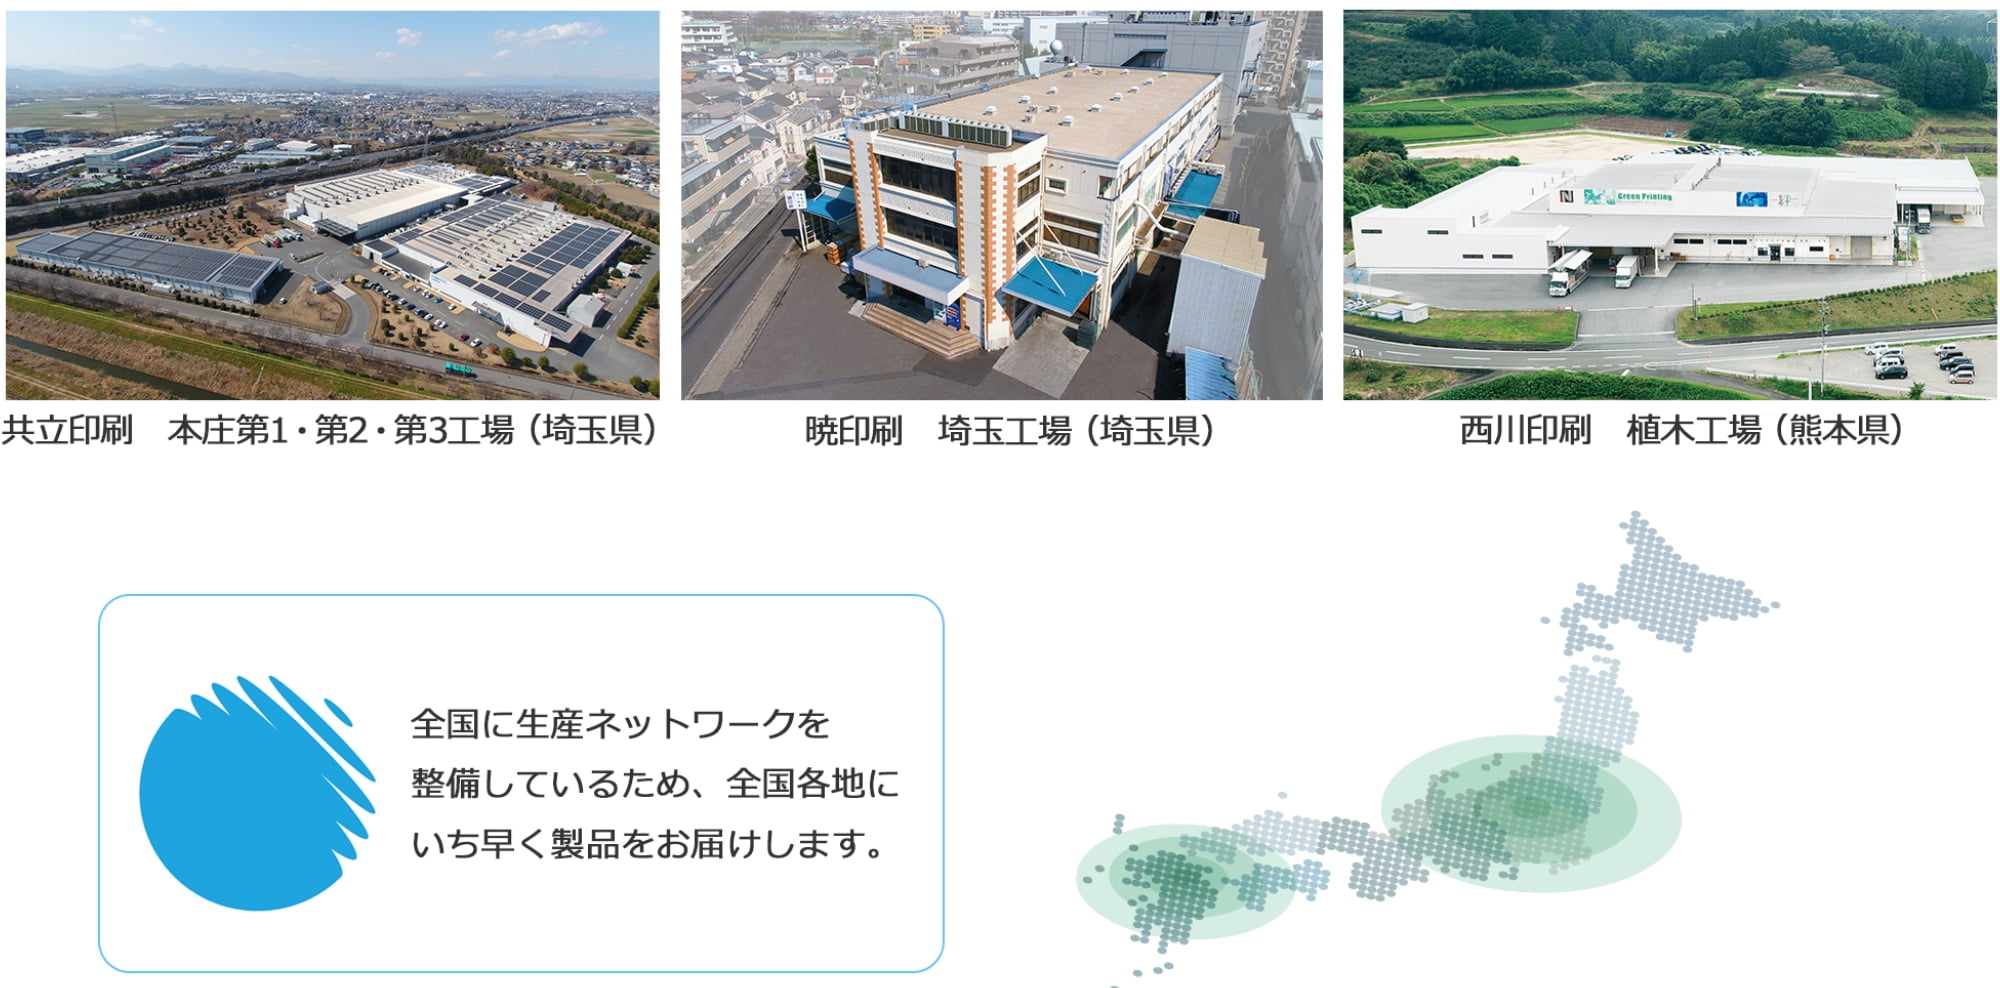 共立印刷 本庄第1・第2・第3工場（埼玉県）, 暁印刷 埼玉工場（埼玉県）, 西川印刷 植木工場（熊本県）, 全国に生産ネットワークを整備しているため、全国各地にいち早く製品をお届けします。